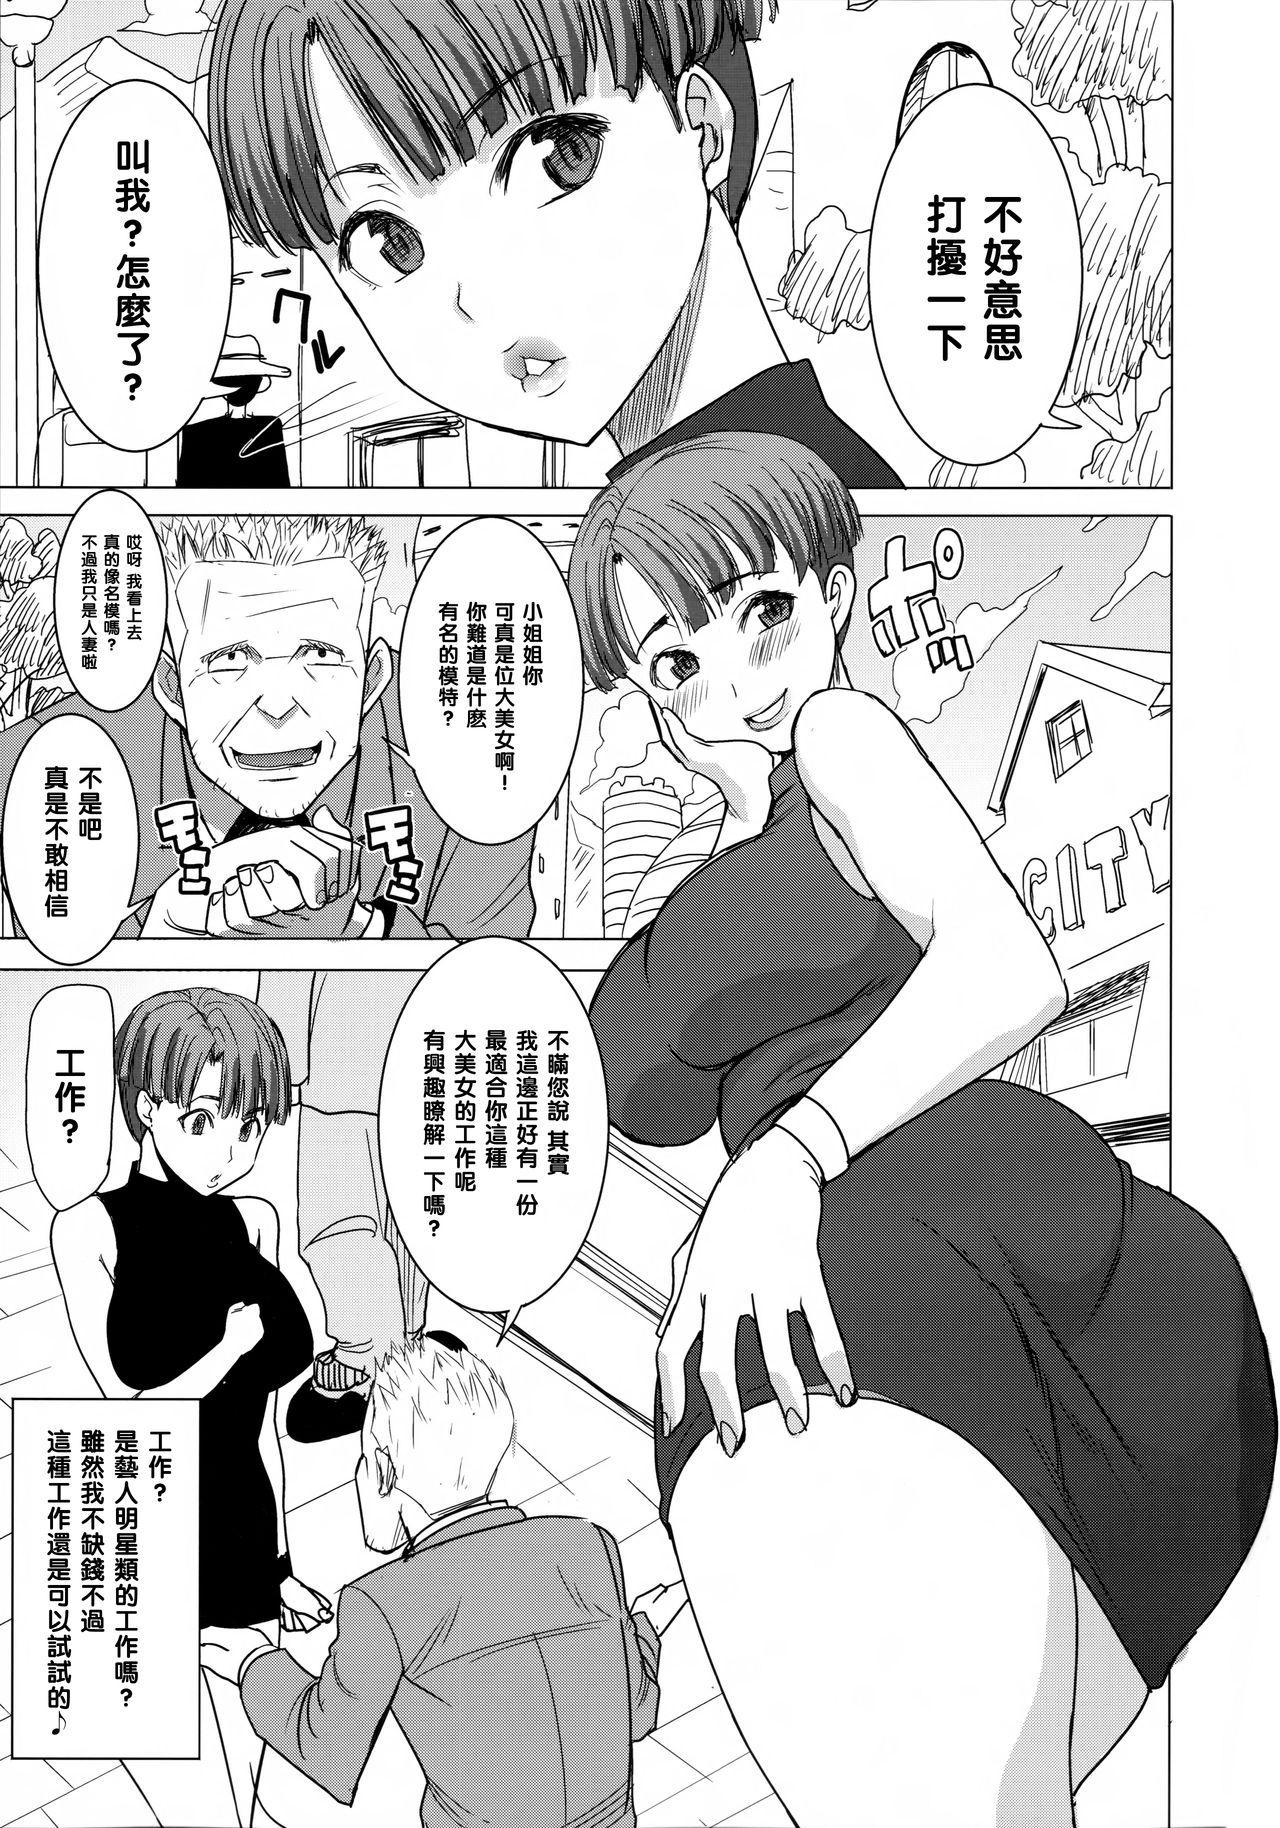 Puba DELIVERY NIKU BENKI - Dragon ball z 3some - Page 3